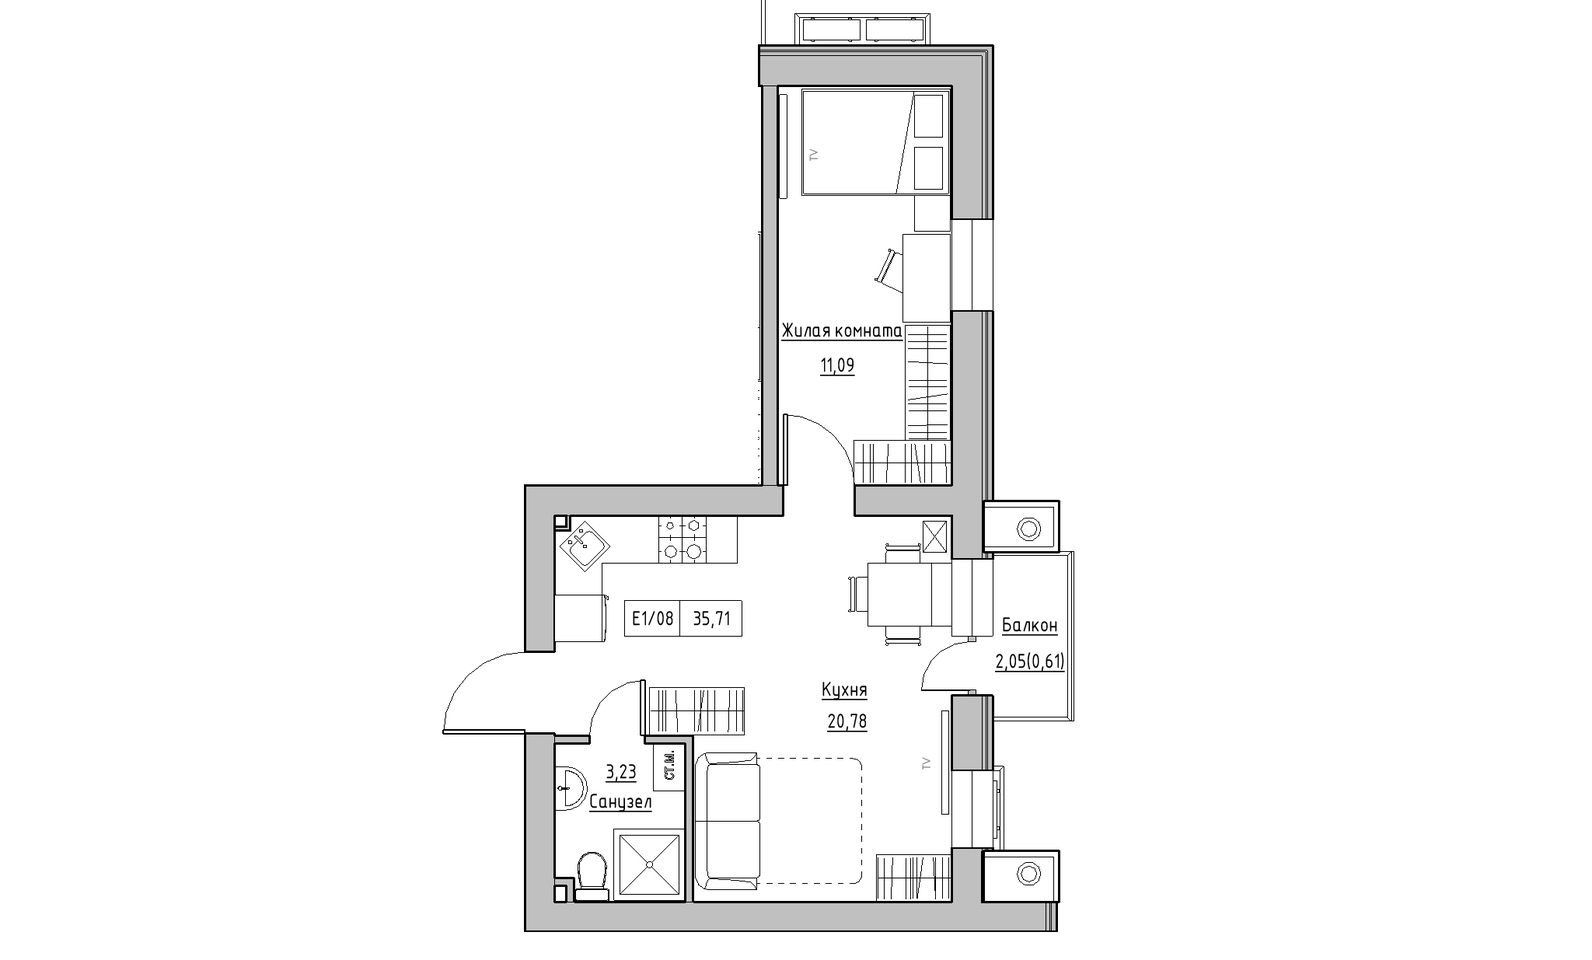 Планування 1-к квартира площею 35.71м2, KS-014-02/0009.